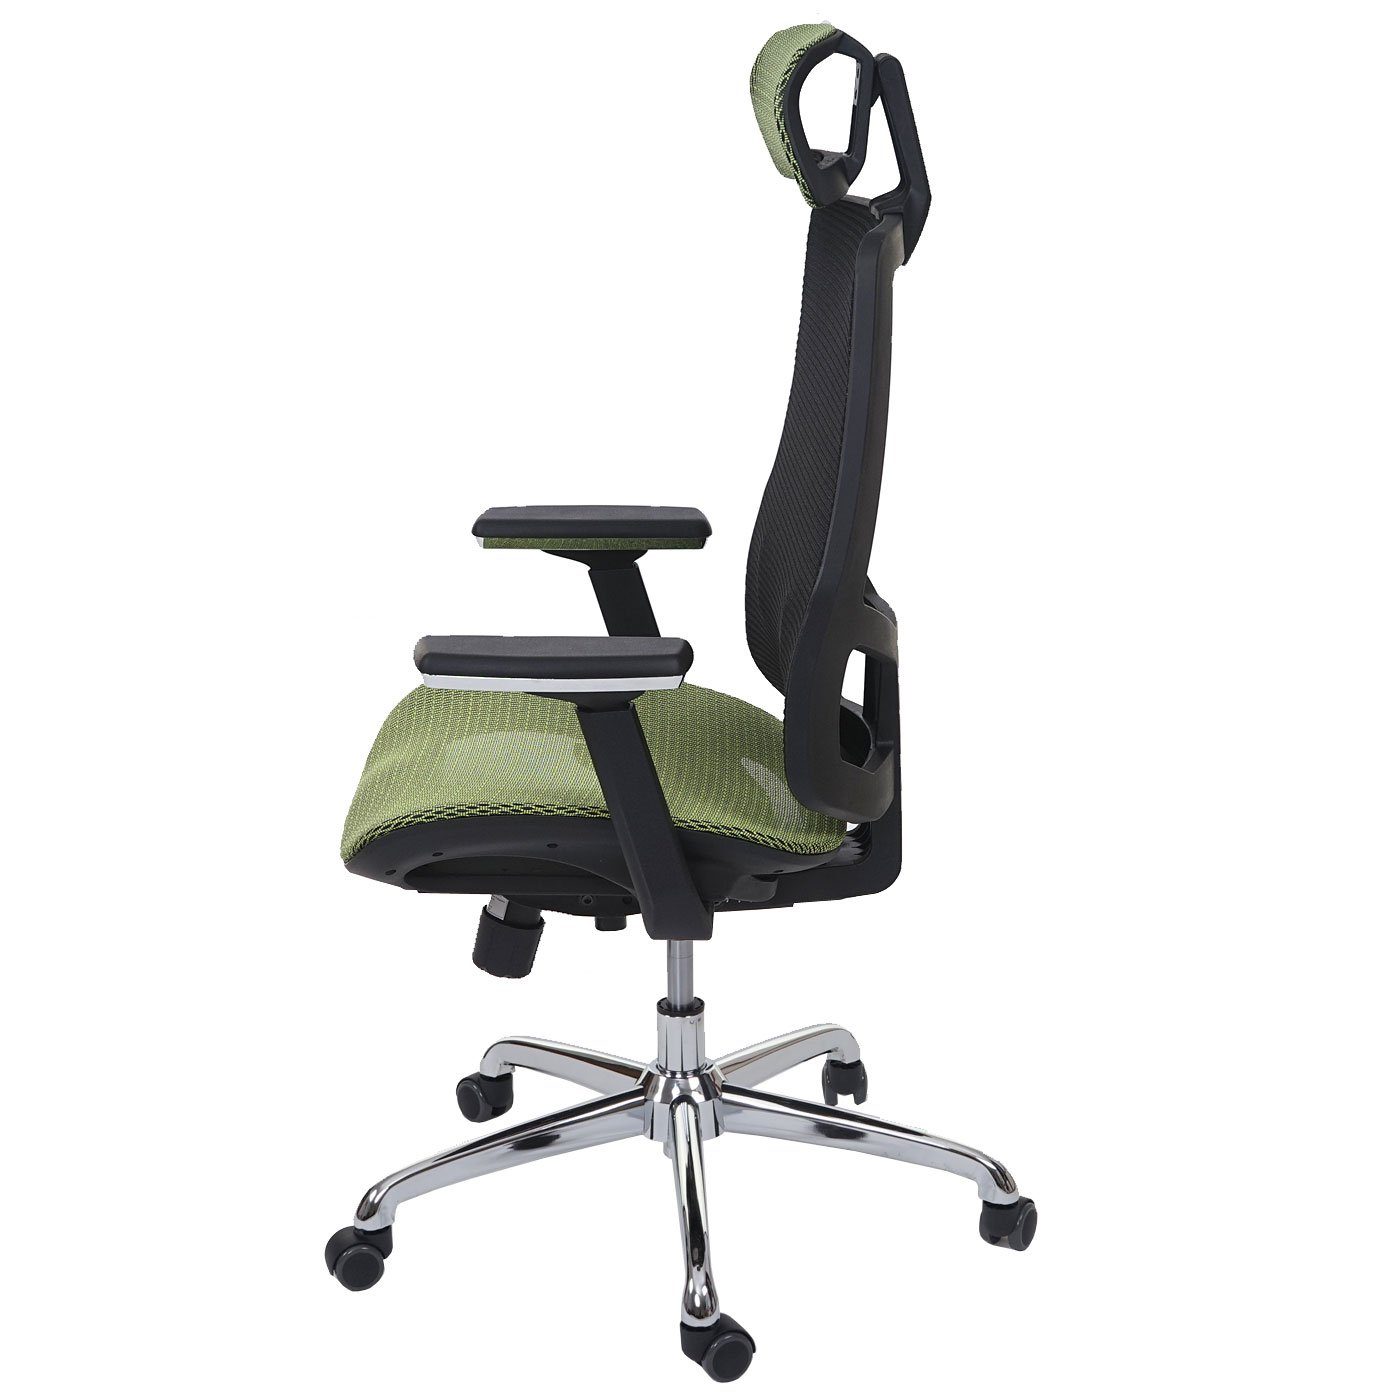 MCW Schreibtischstuhl MCW-A58, Armlehnen Netzbespannung Luftzirkulation höhenverstellbar, grün,schwarz verbessert